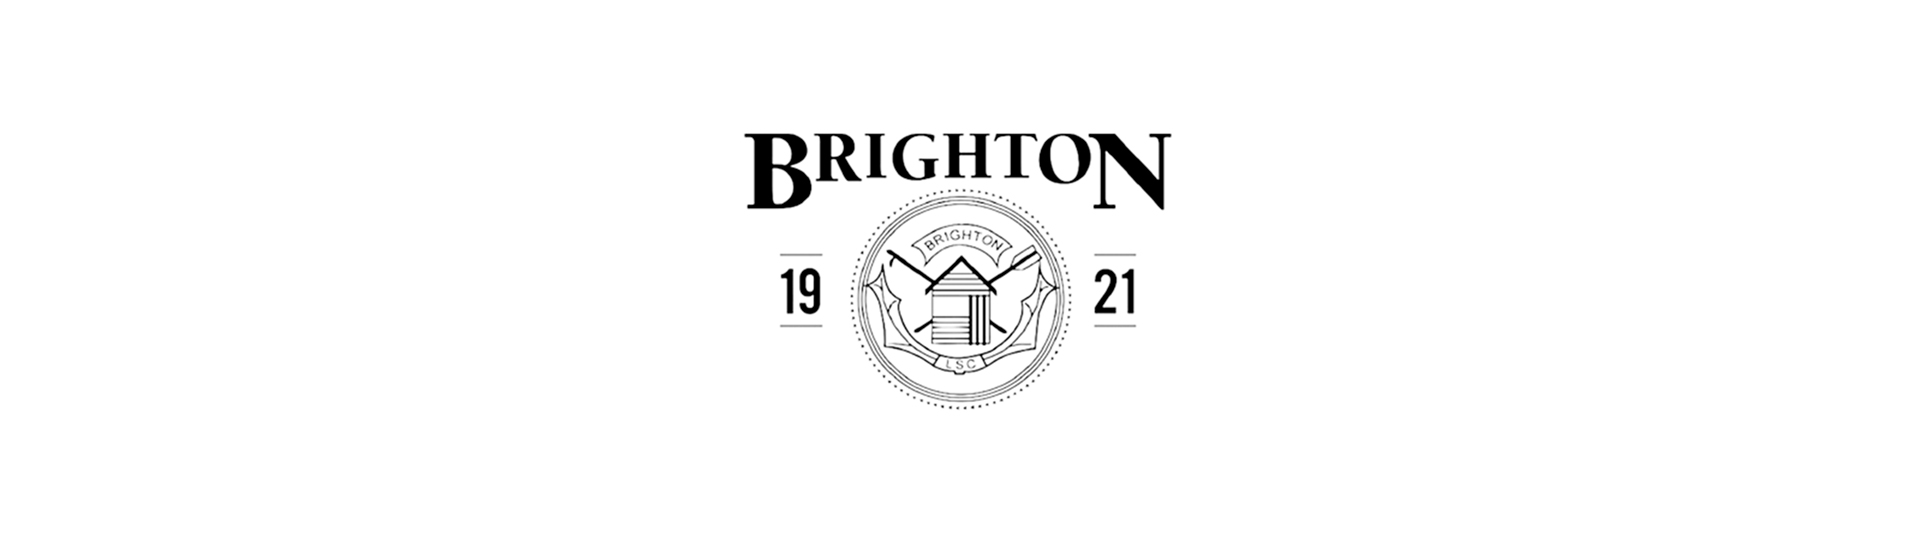 Logo Brighton Soda